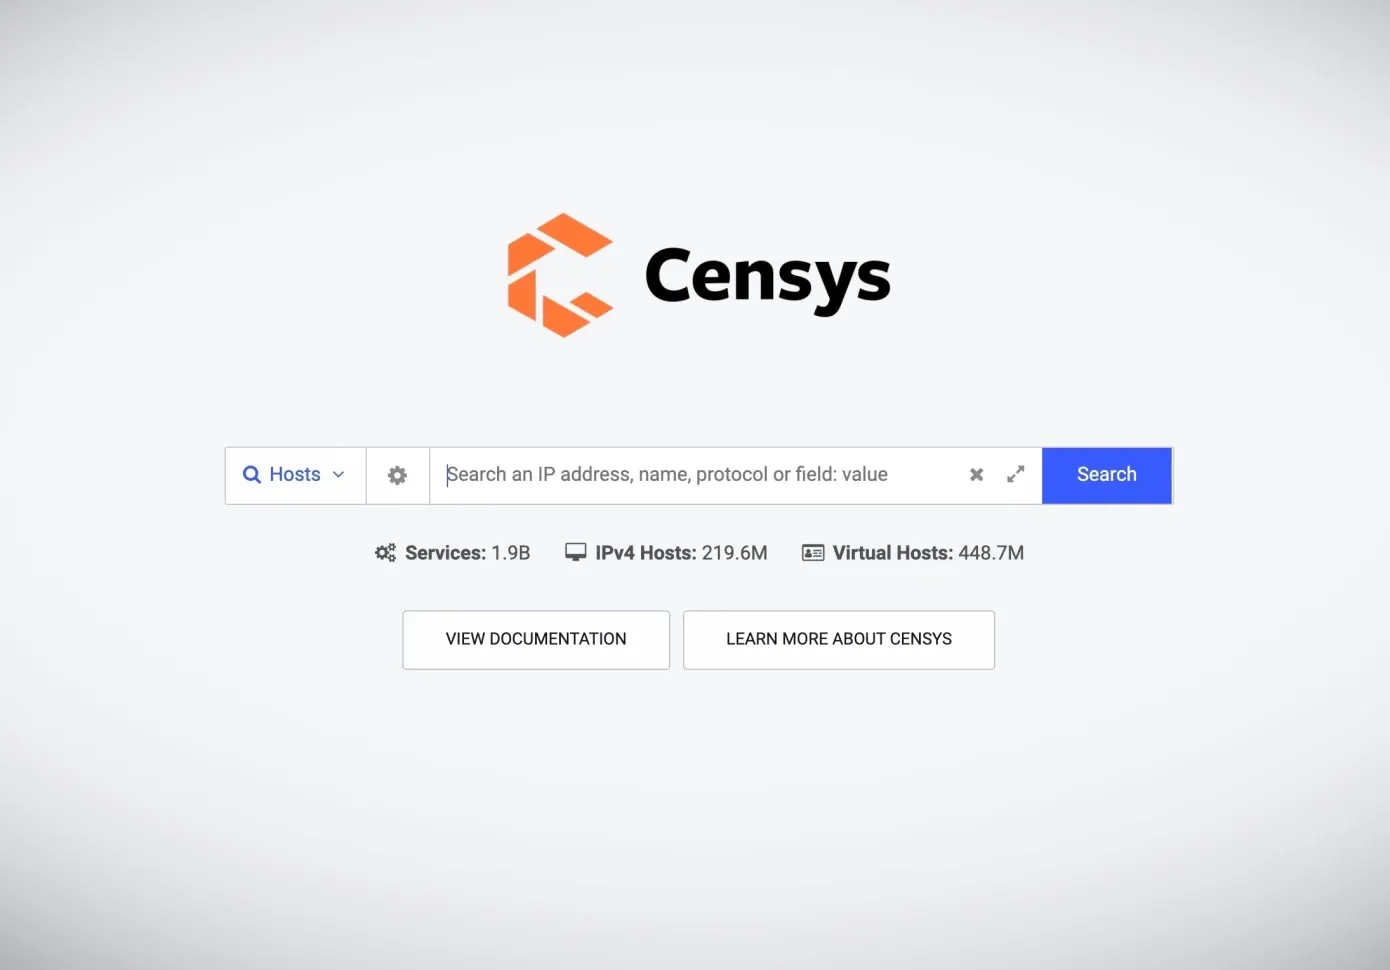 物联网搜索引擎Censys完成3500万B轮融资 迎来一位新CEO